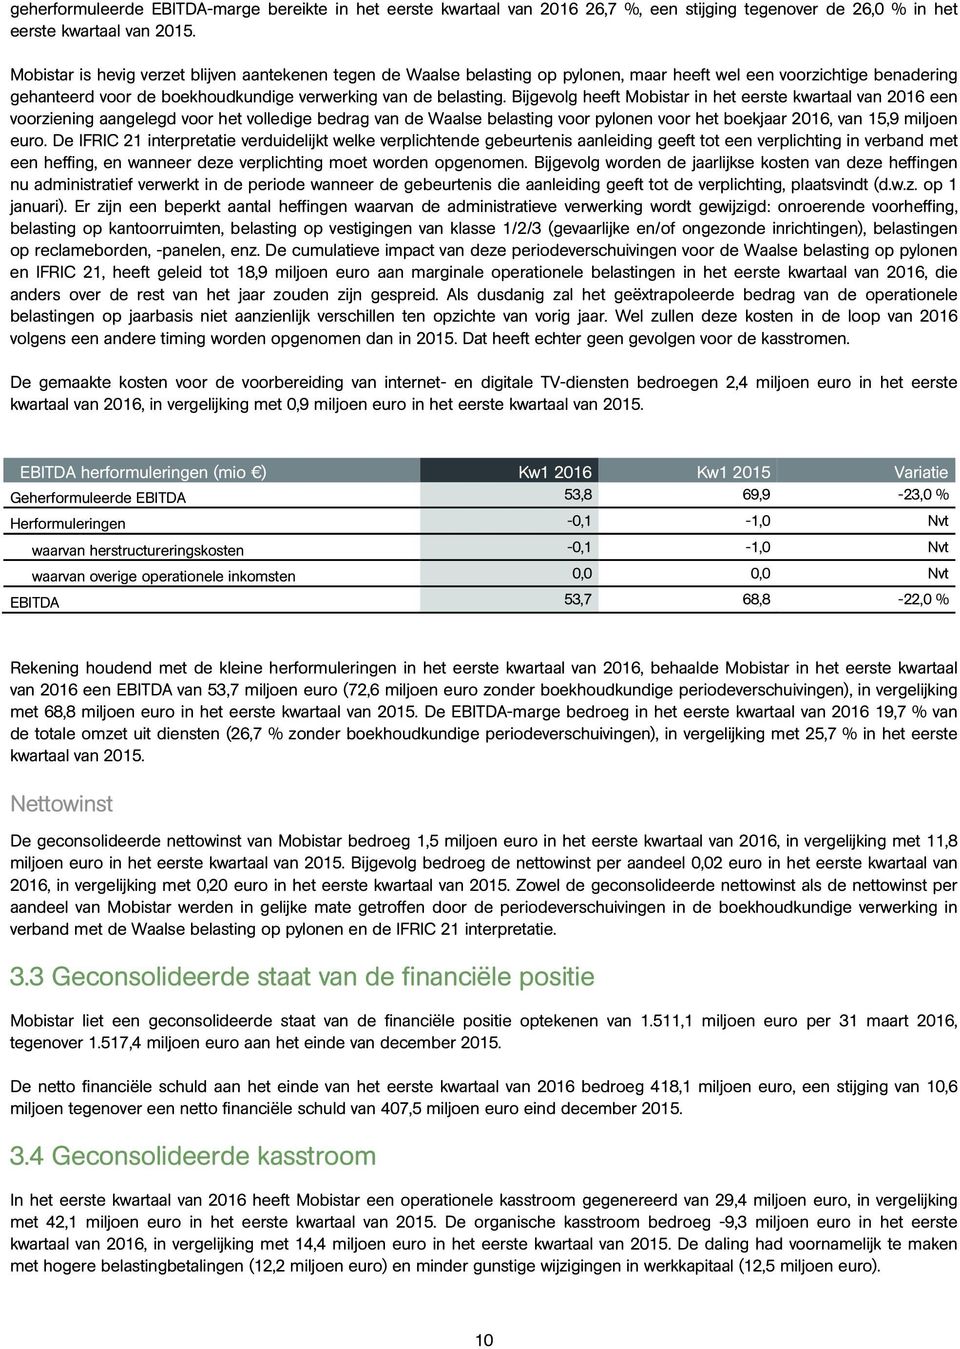 Bijgevolg heeft Mobistar in het eerste kwartaal van 2016 een voorziening aangelegd voor het volledige bedrag van de Waalse belasting voor pylonen voor het boekjaar 2016, van 15,9 miljoen euro.